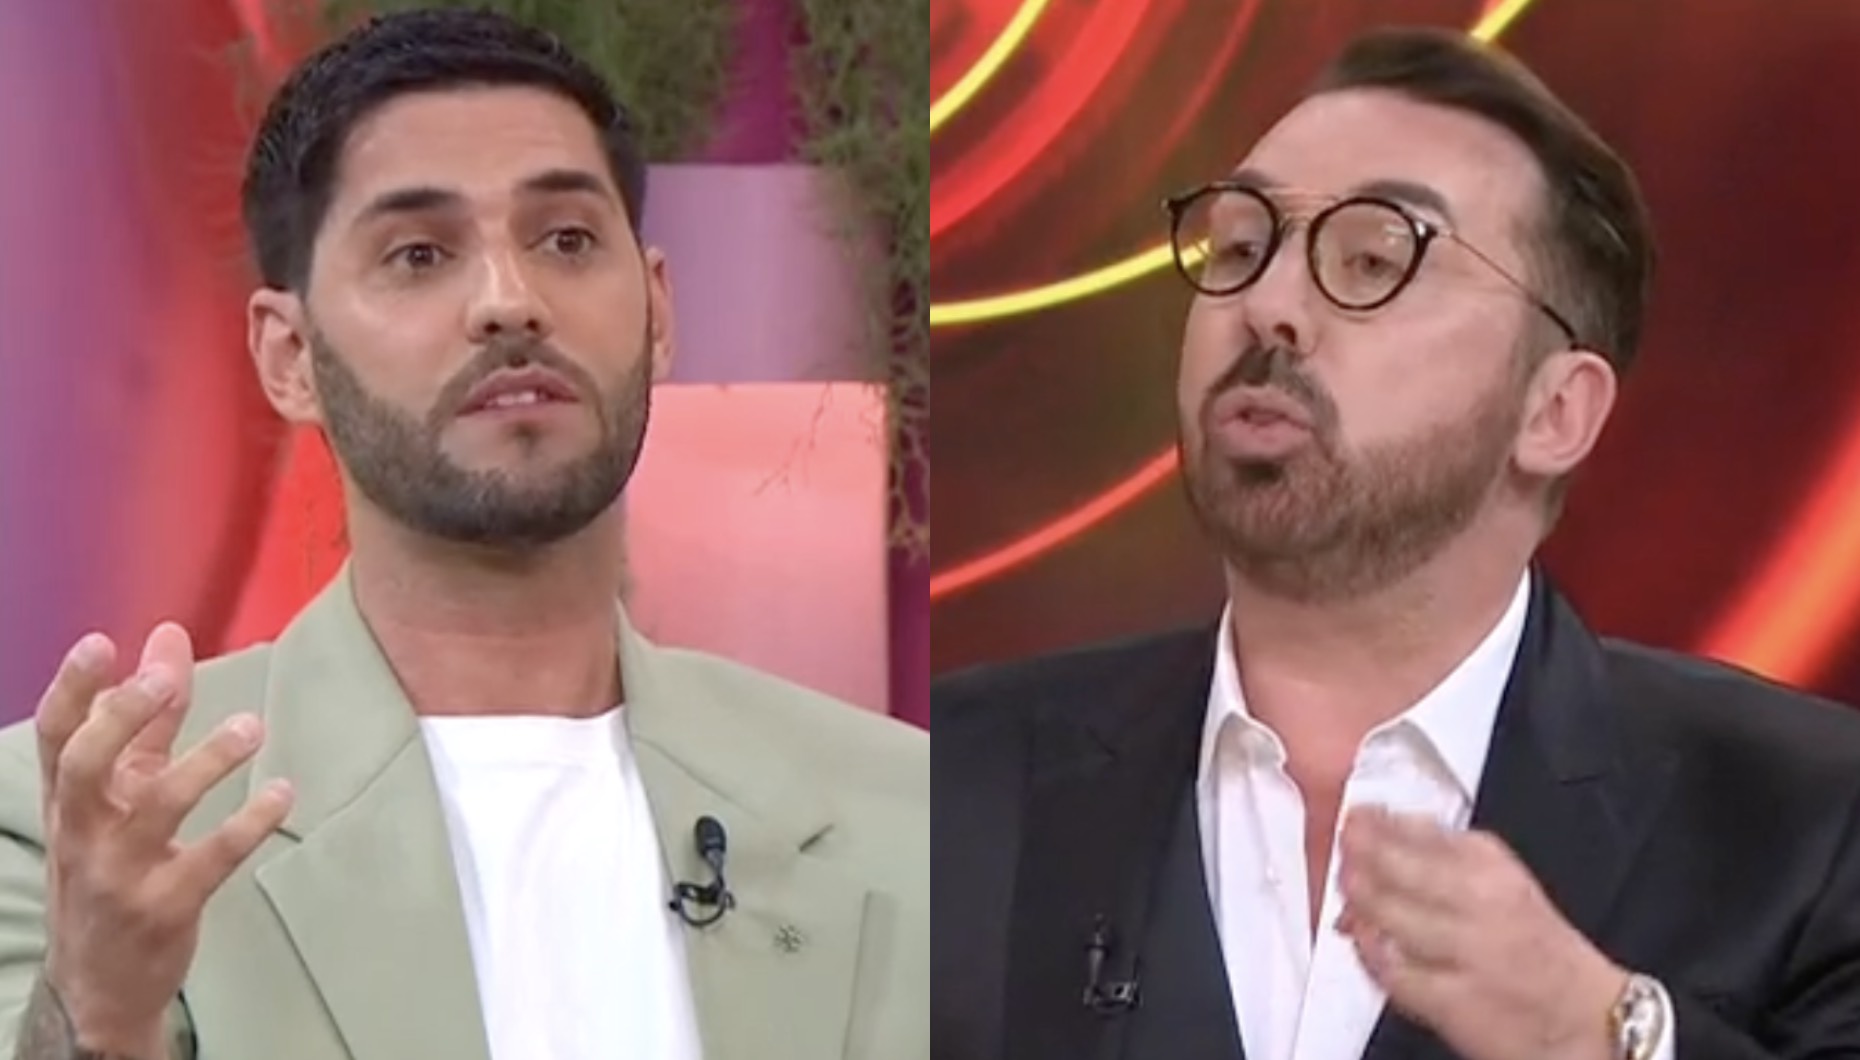 Big Brother - Desafio Final: Flávio Furtado dá raspanete a Gonçalo Quinaz (e a outros comentadores)